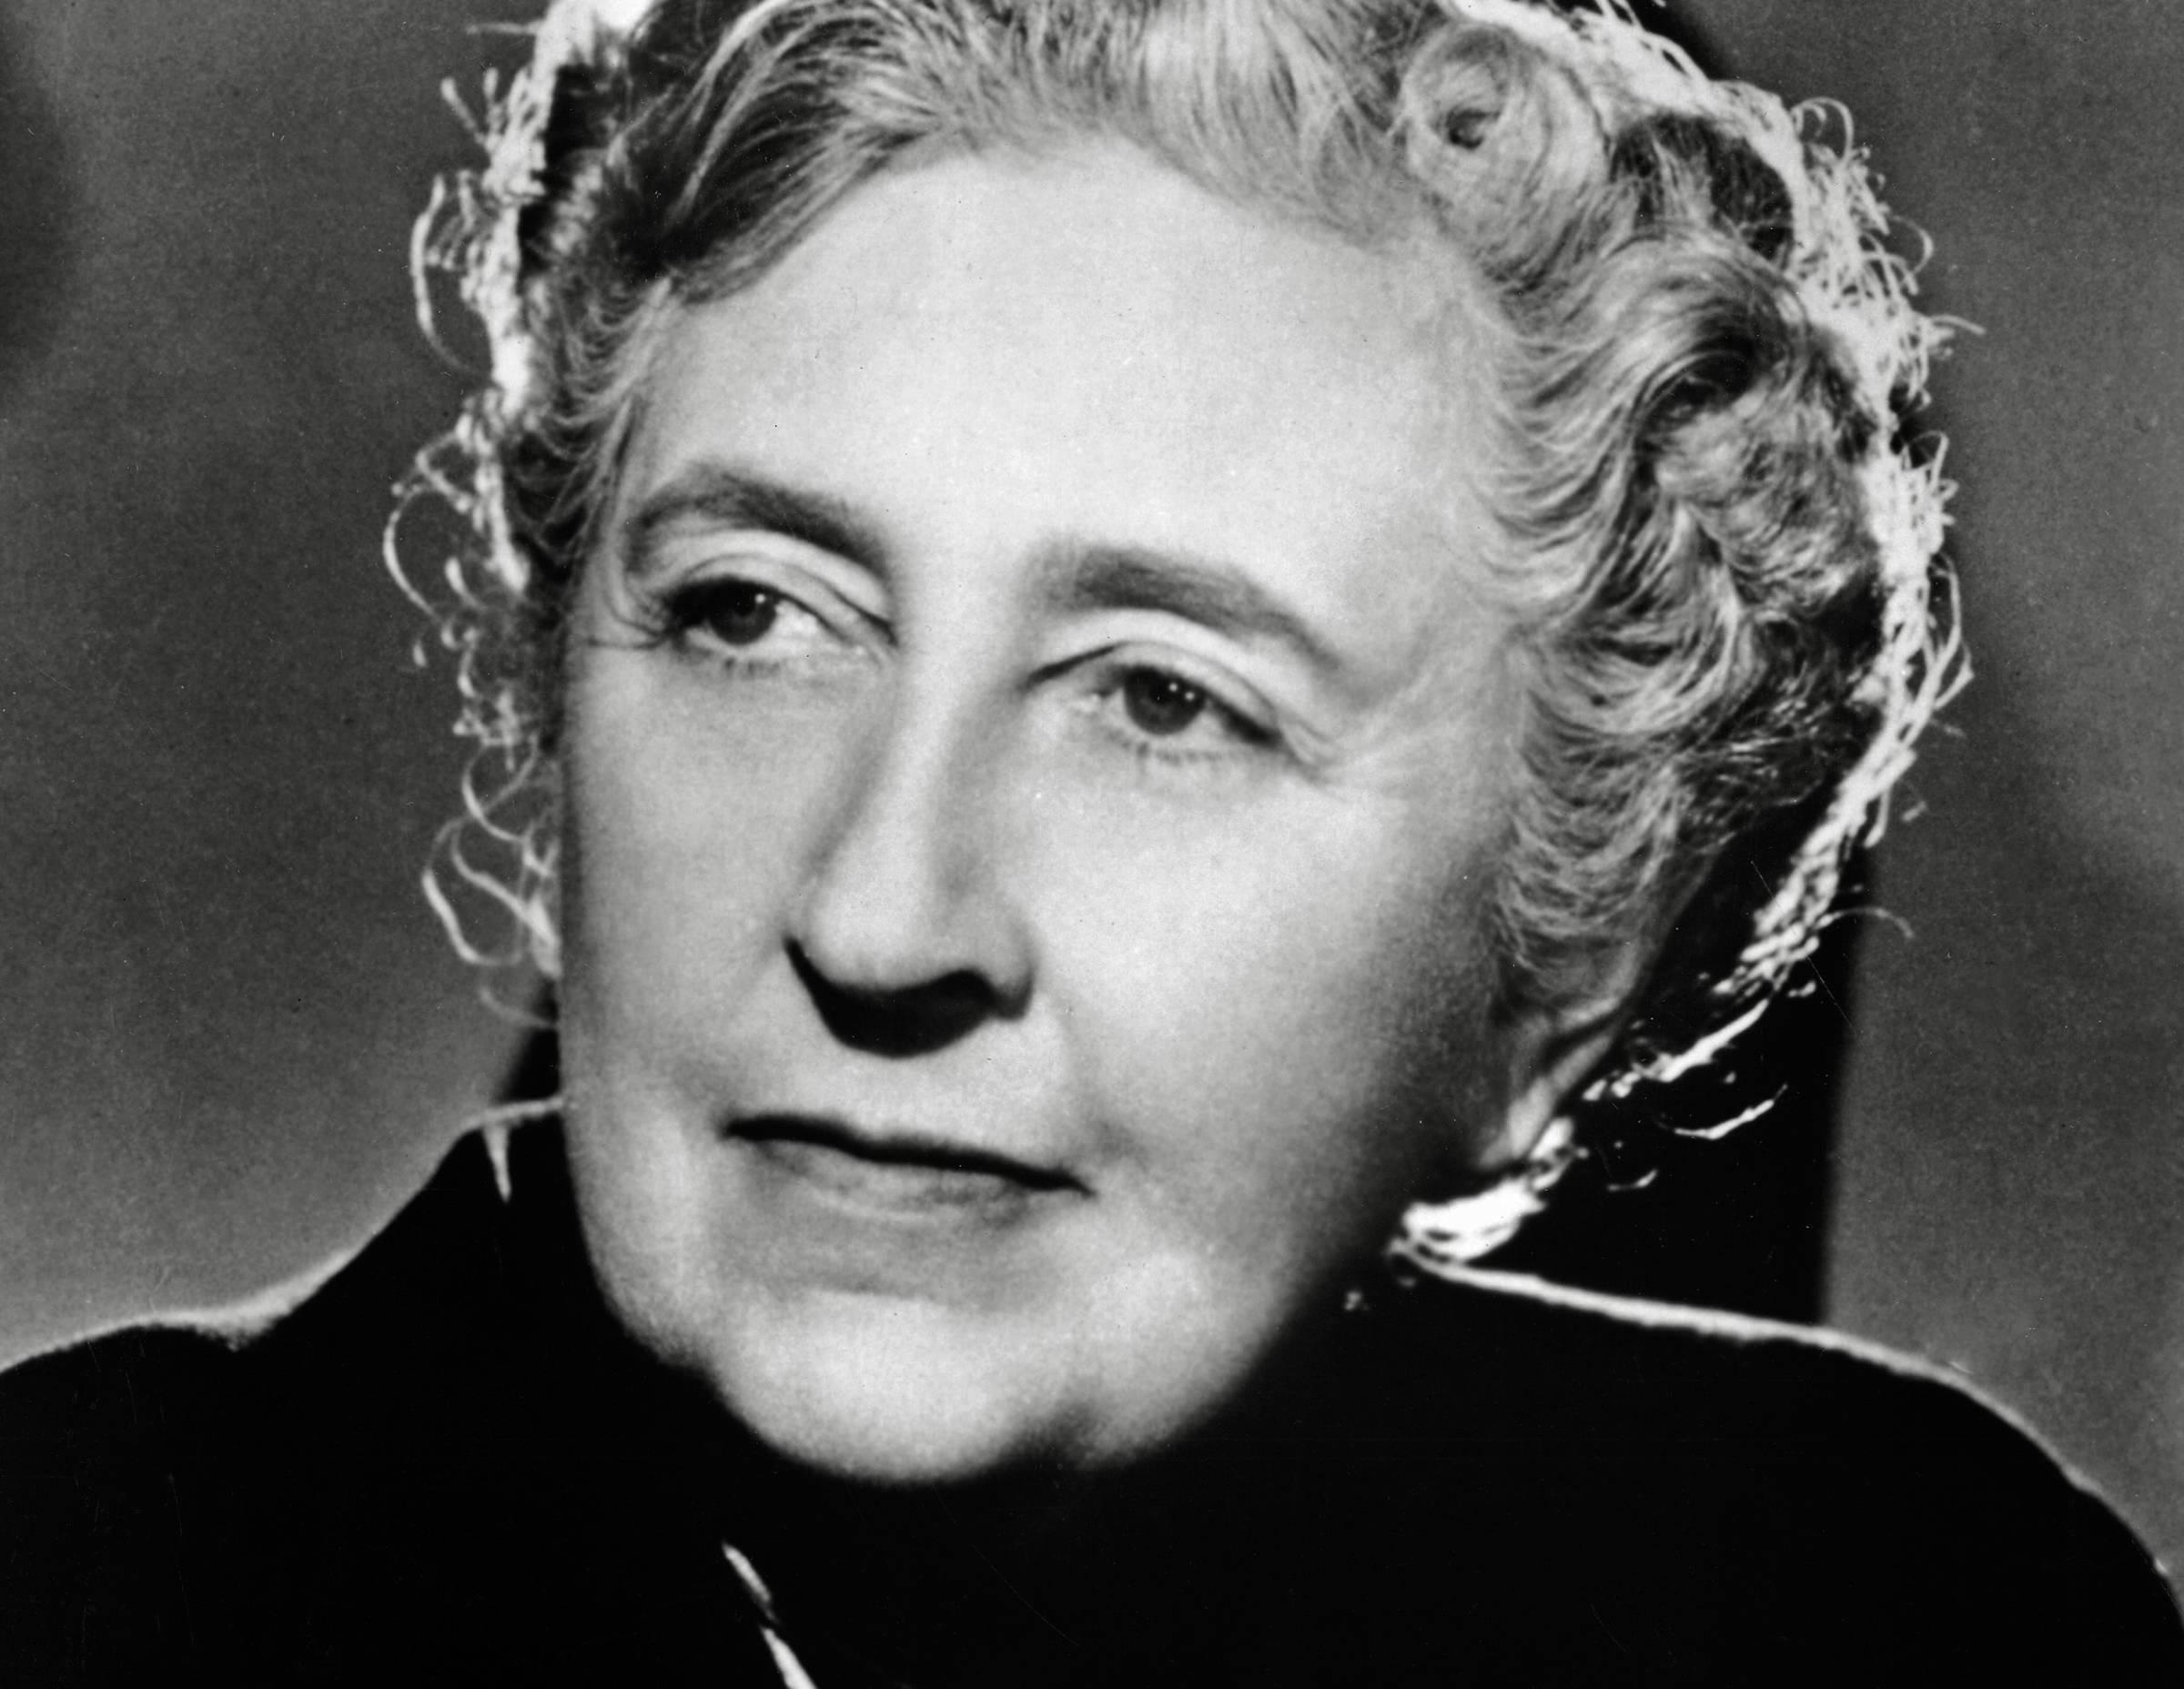 Agatha Christie, via dai gialli "insulti o riferimenti etnici"